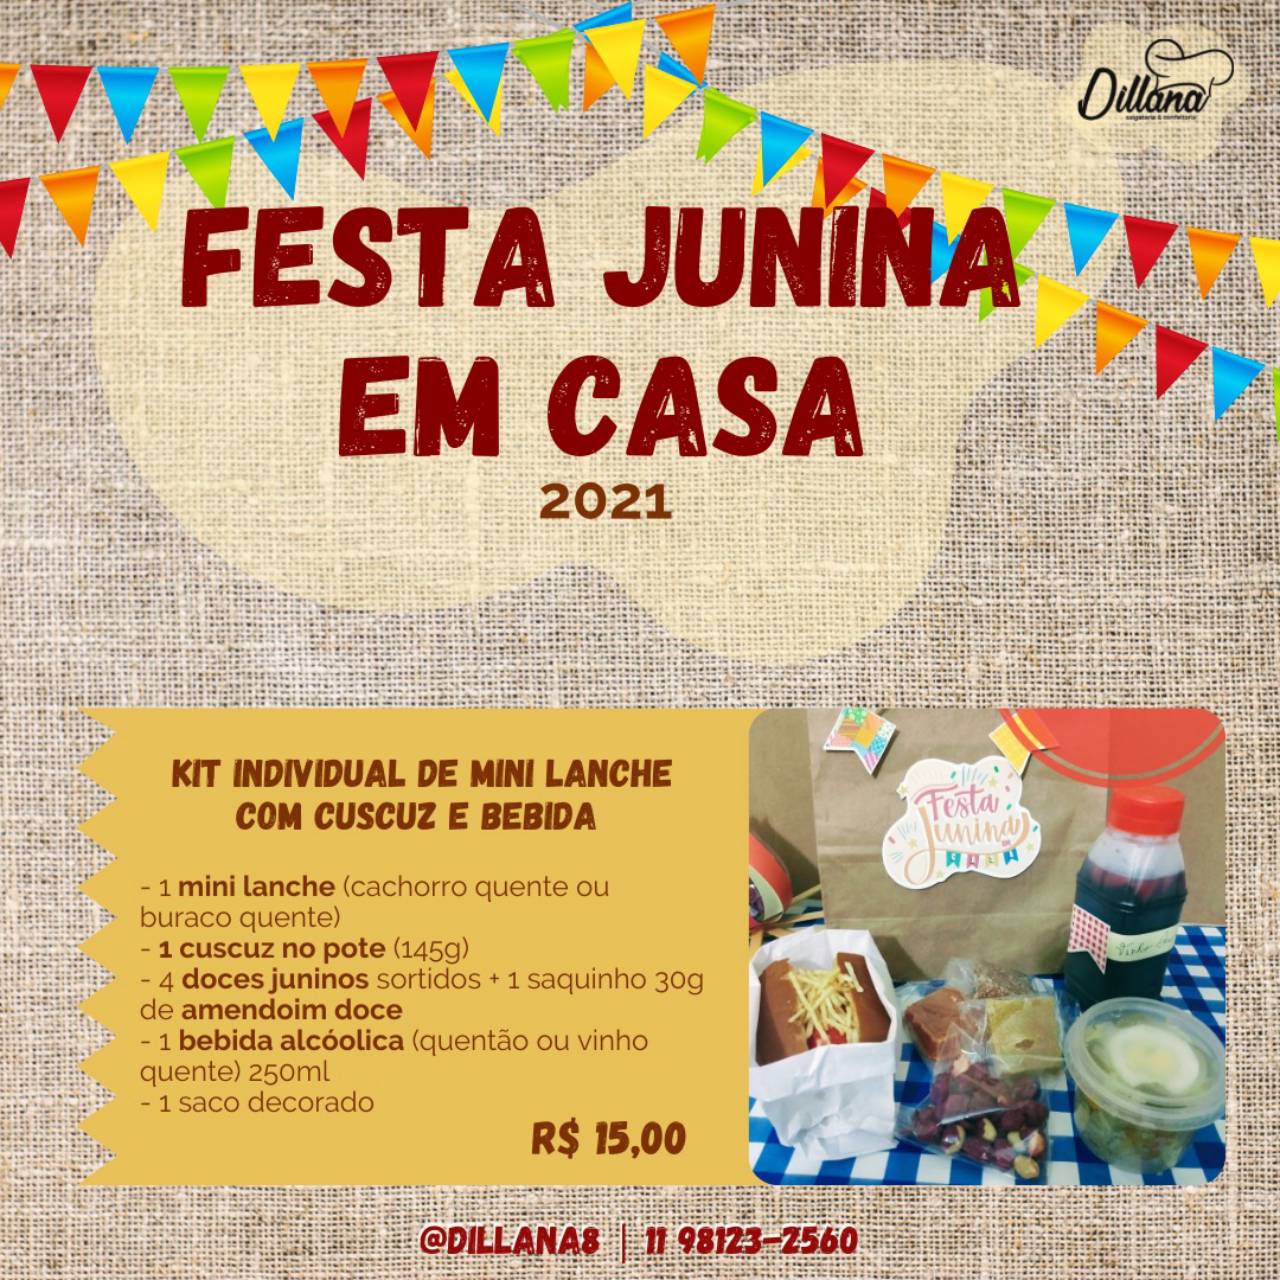 Cardápio - festa junina em casa em Jundiaí, SP | Classificados - Solutudo - cardapio festa junina